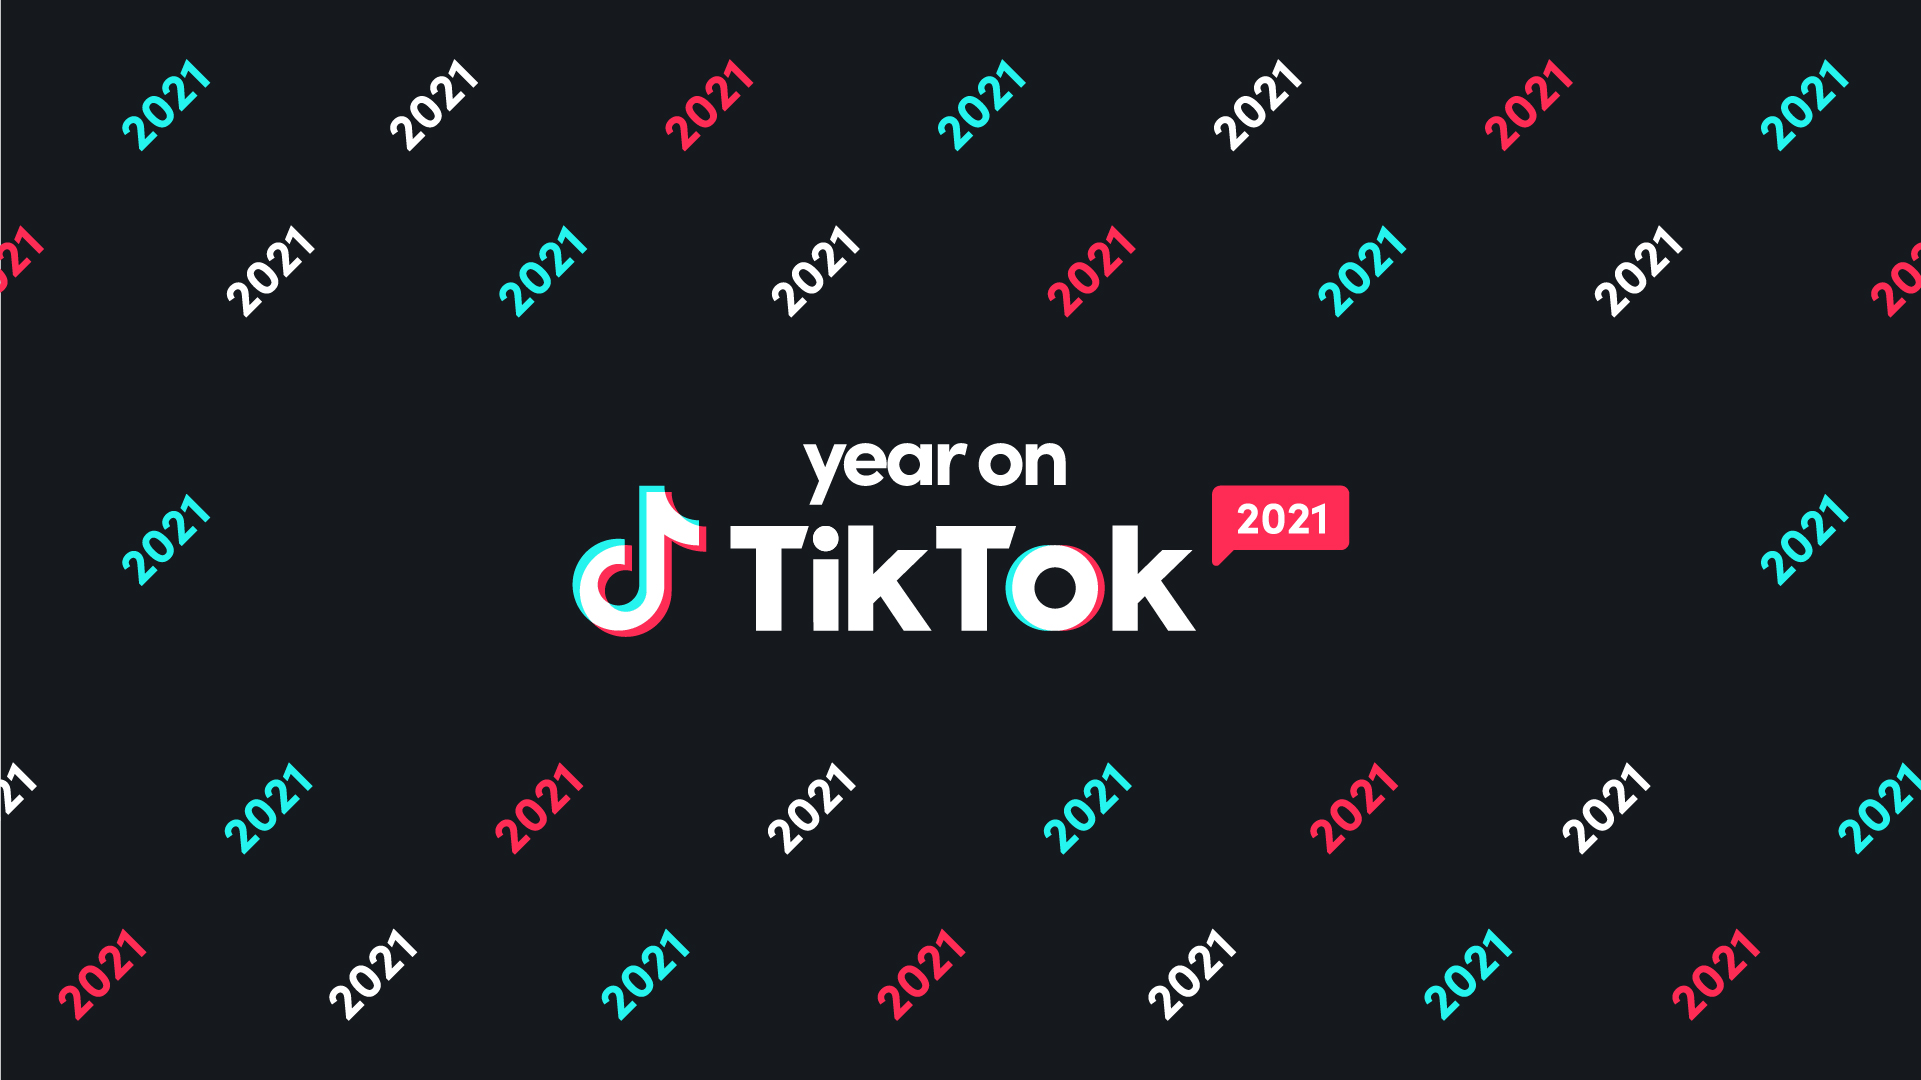 TikTok: Hãy khám phá thế giới của những thử thách hài hước và những điệu nhảy đầy năng lượng trên TikTok. Hình ảnh này sẽ khiến bạn muốn có ngay một tài khoản TikTok và tham gia vào cộng đồng trẻ trung và sáng tạo này.